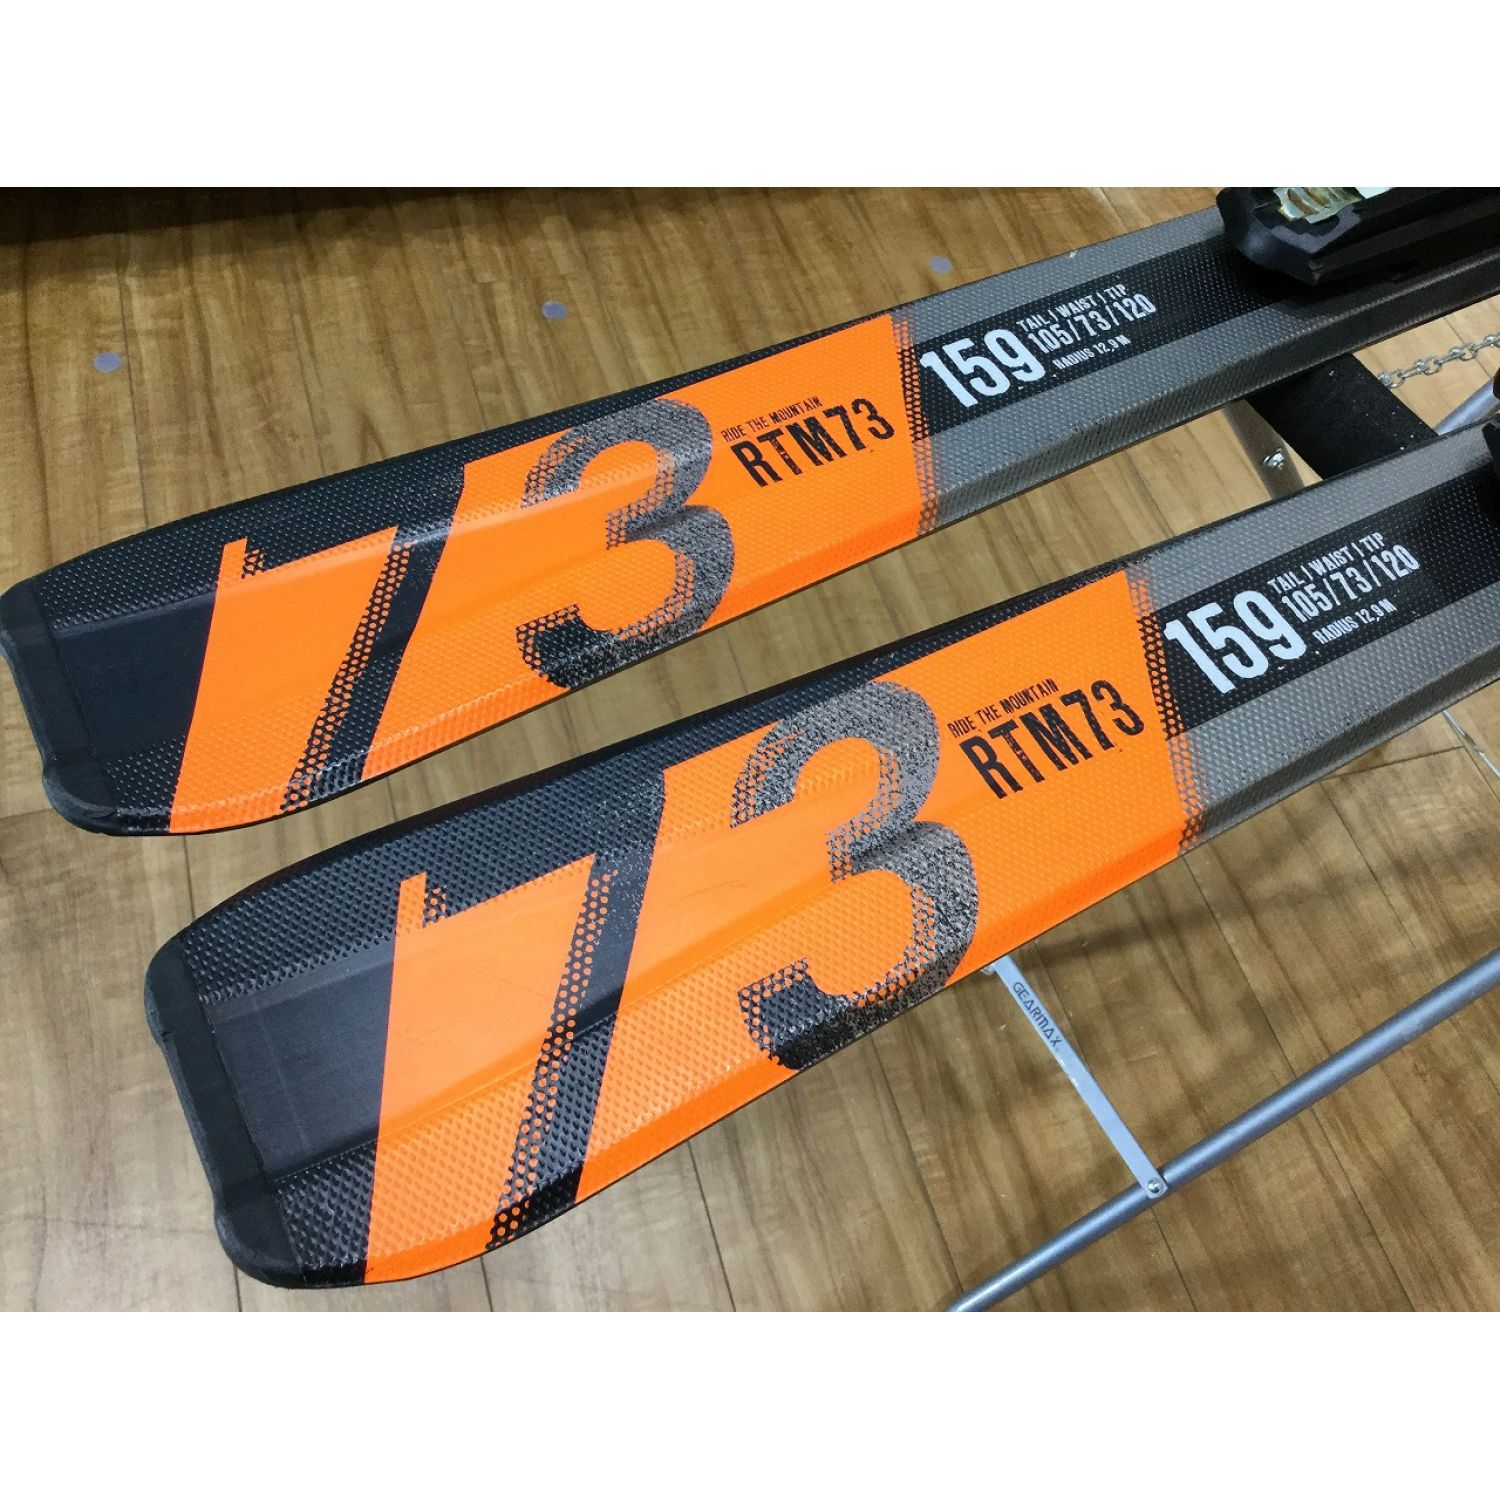 【美品!!】VOLKL RTM73 フォルクル スキー板 MARKER 166